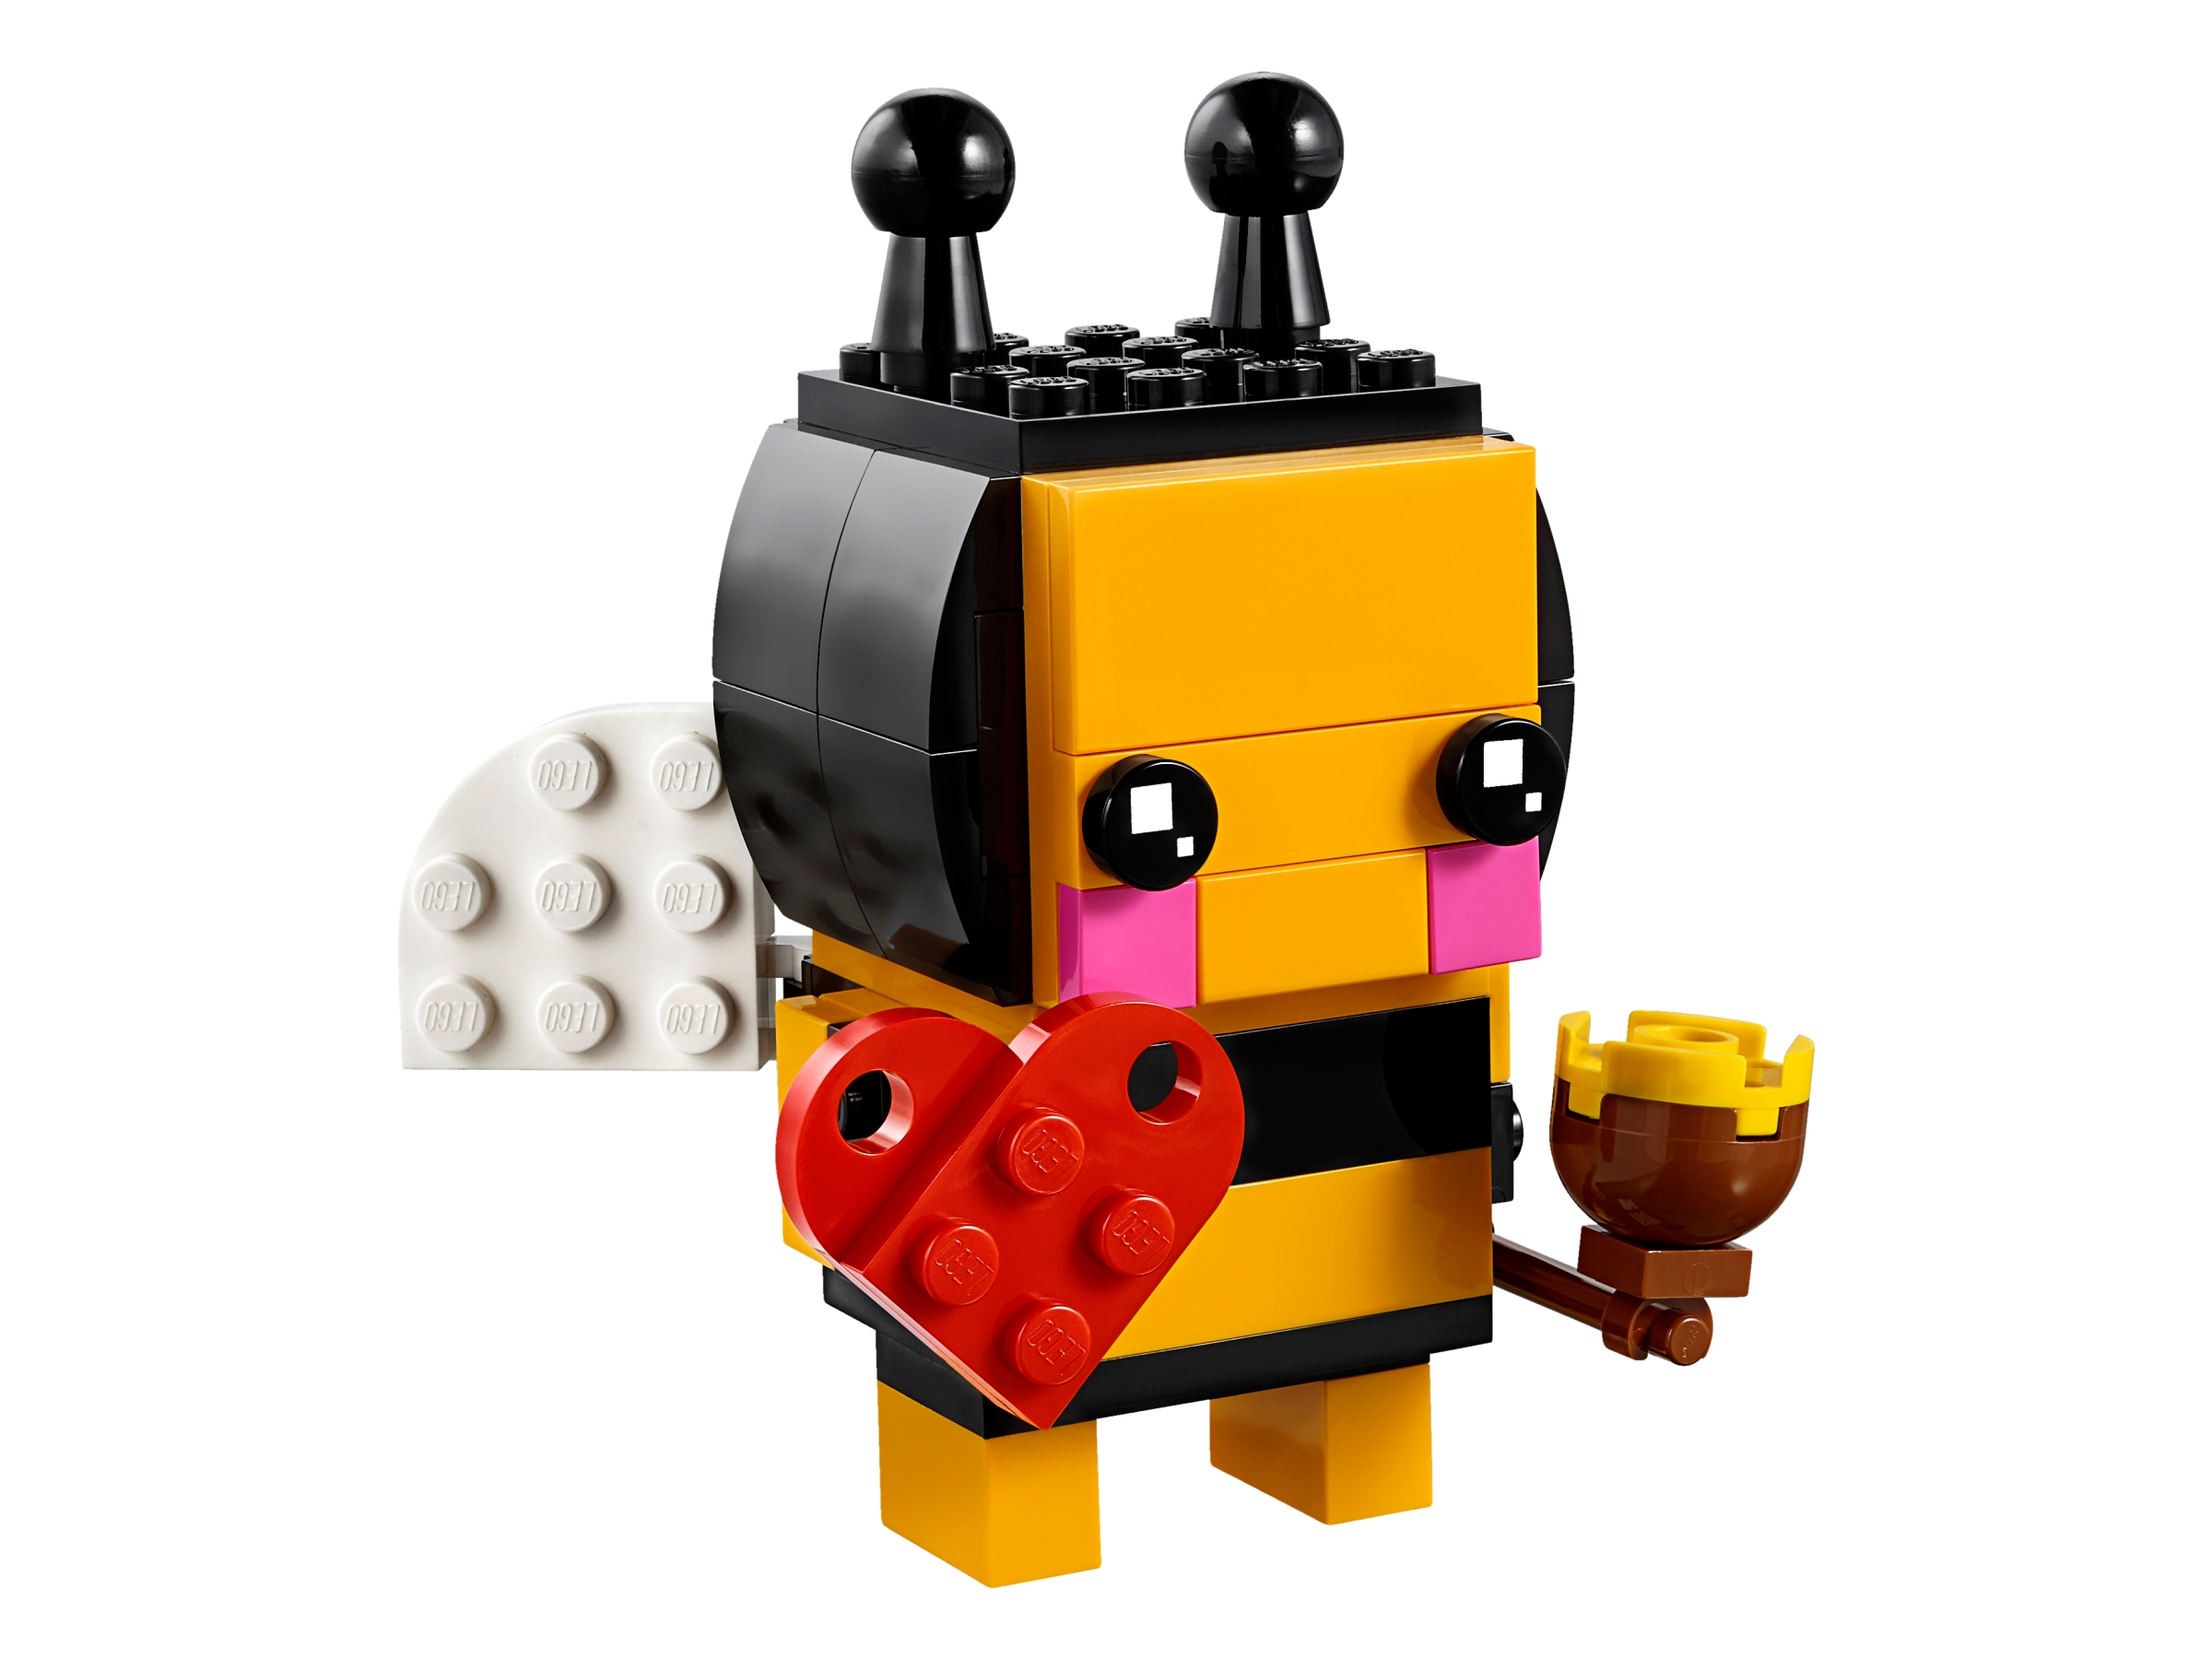 BrickHeadz NEU OVP VERSIEGELT LEGO 40270 Valentinstagsbiene